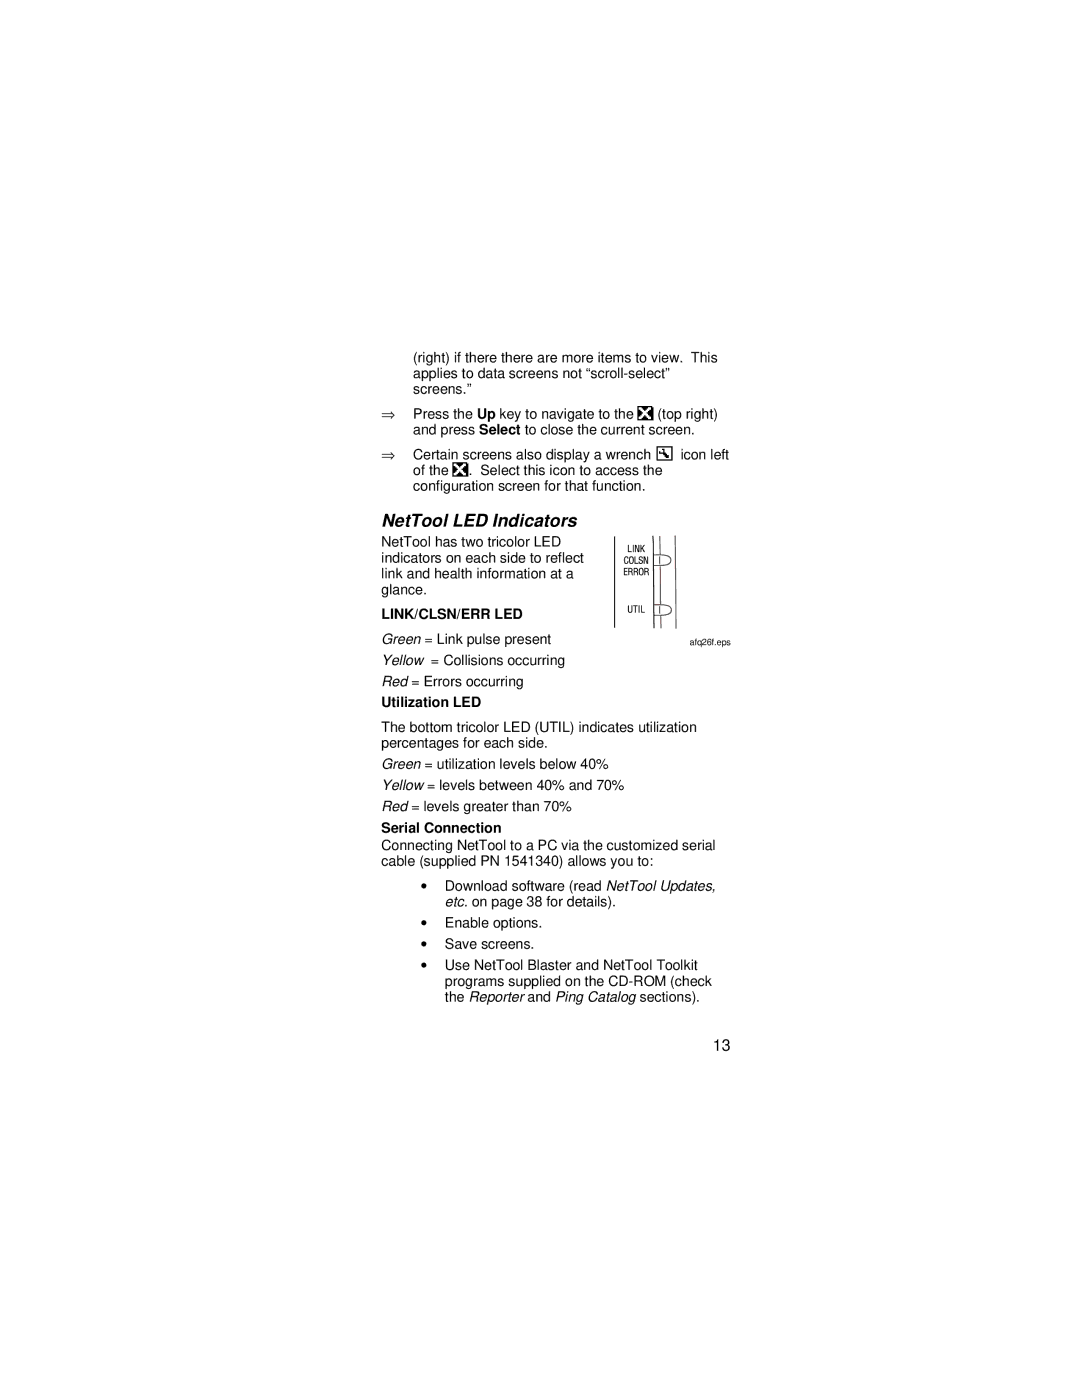 Fluke manual NetTool LED Indicators, Utilization LED, Serial Connection 